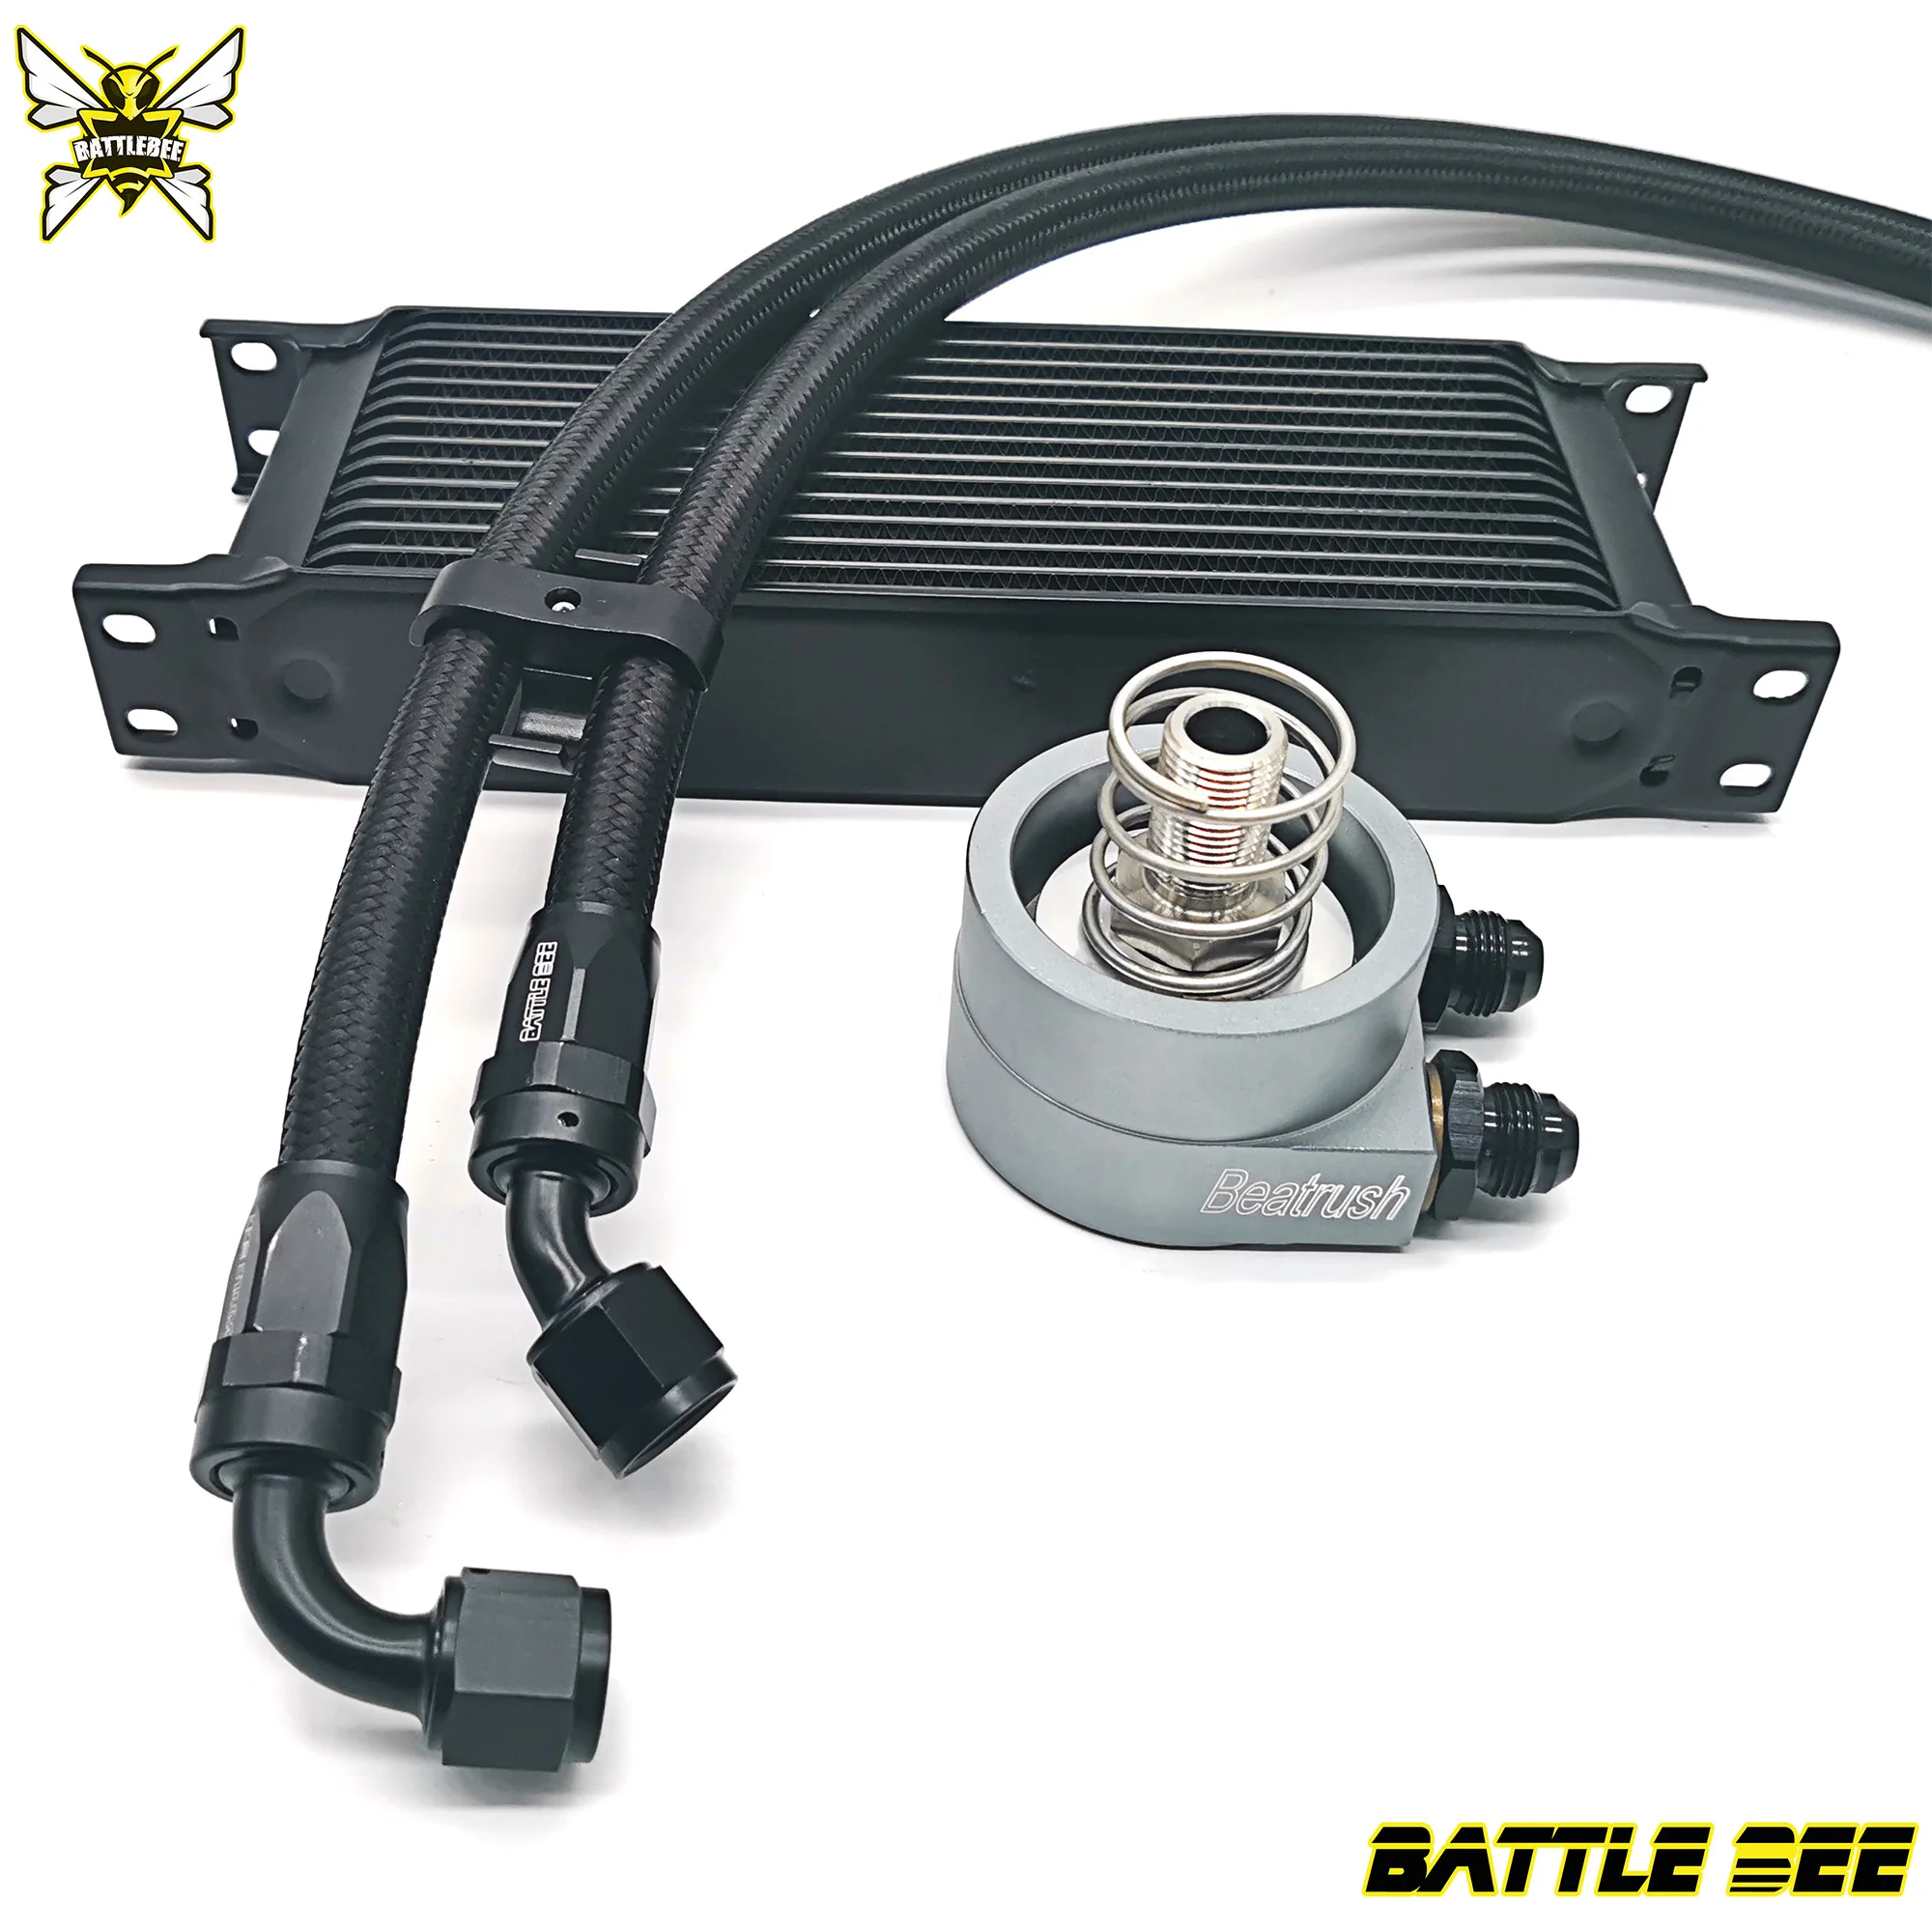 BATTLE BEE Oil Cooler Kit for VAG Volkswagen Audi Golf MK5 MK6 1.4T EA111 ENGINE gas pumps